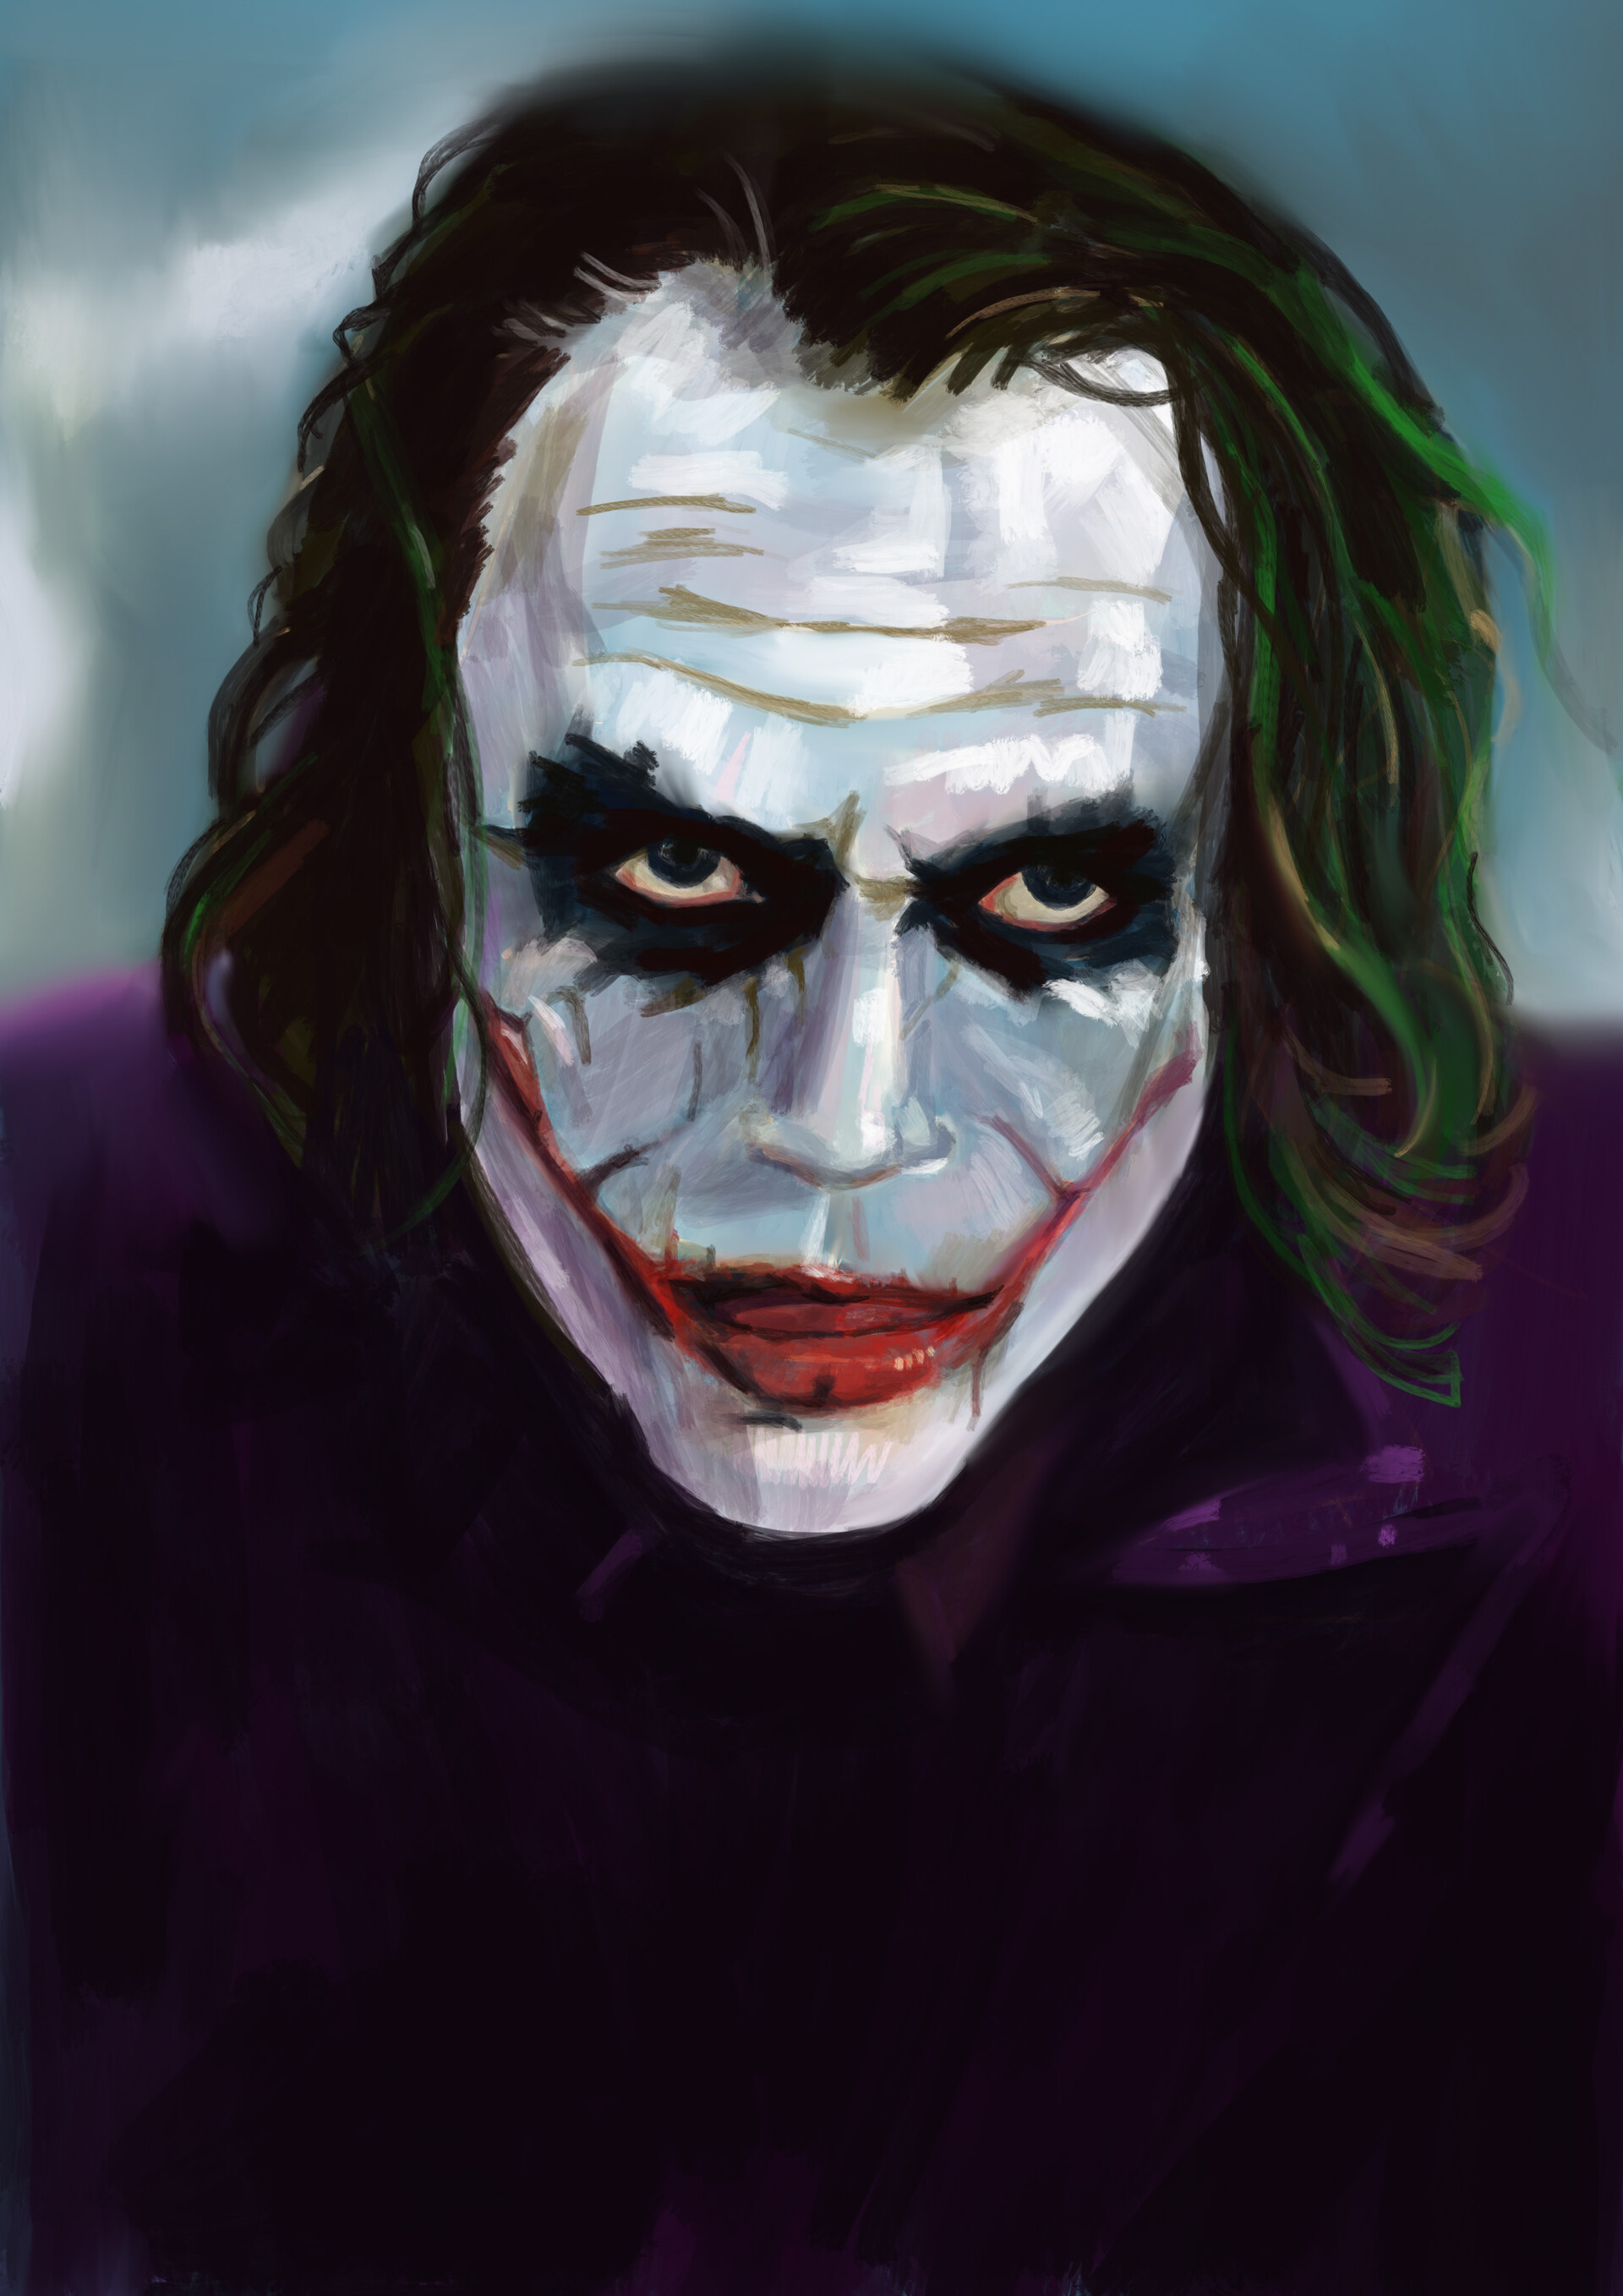 ArtStation - Heath Andrew Ledger as Joker